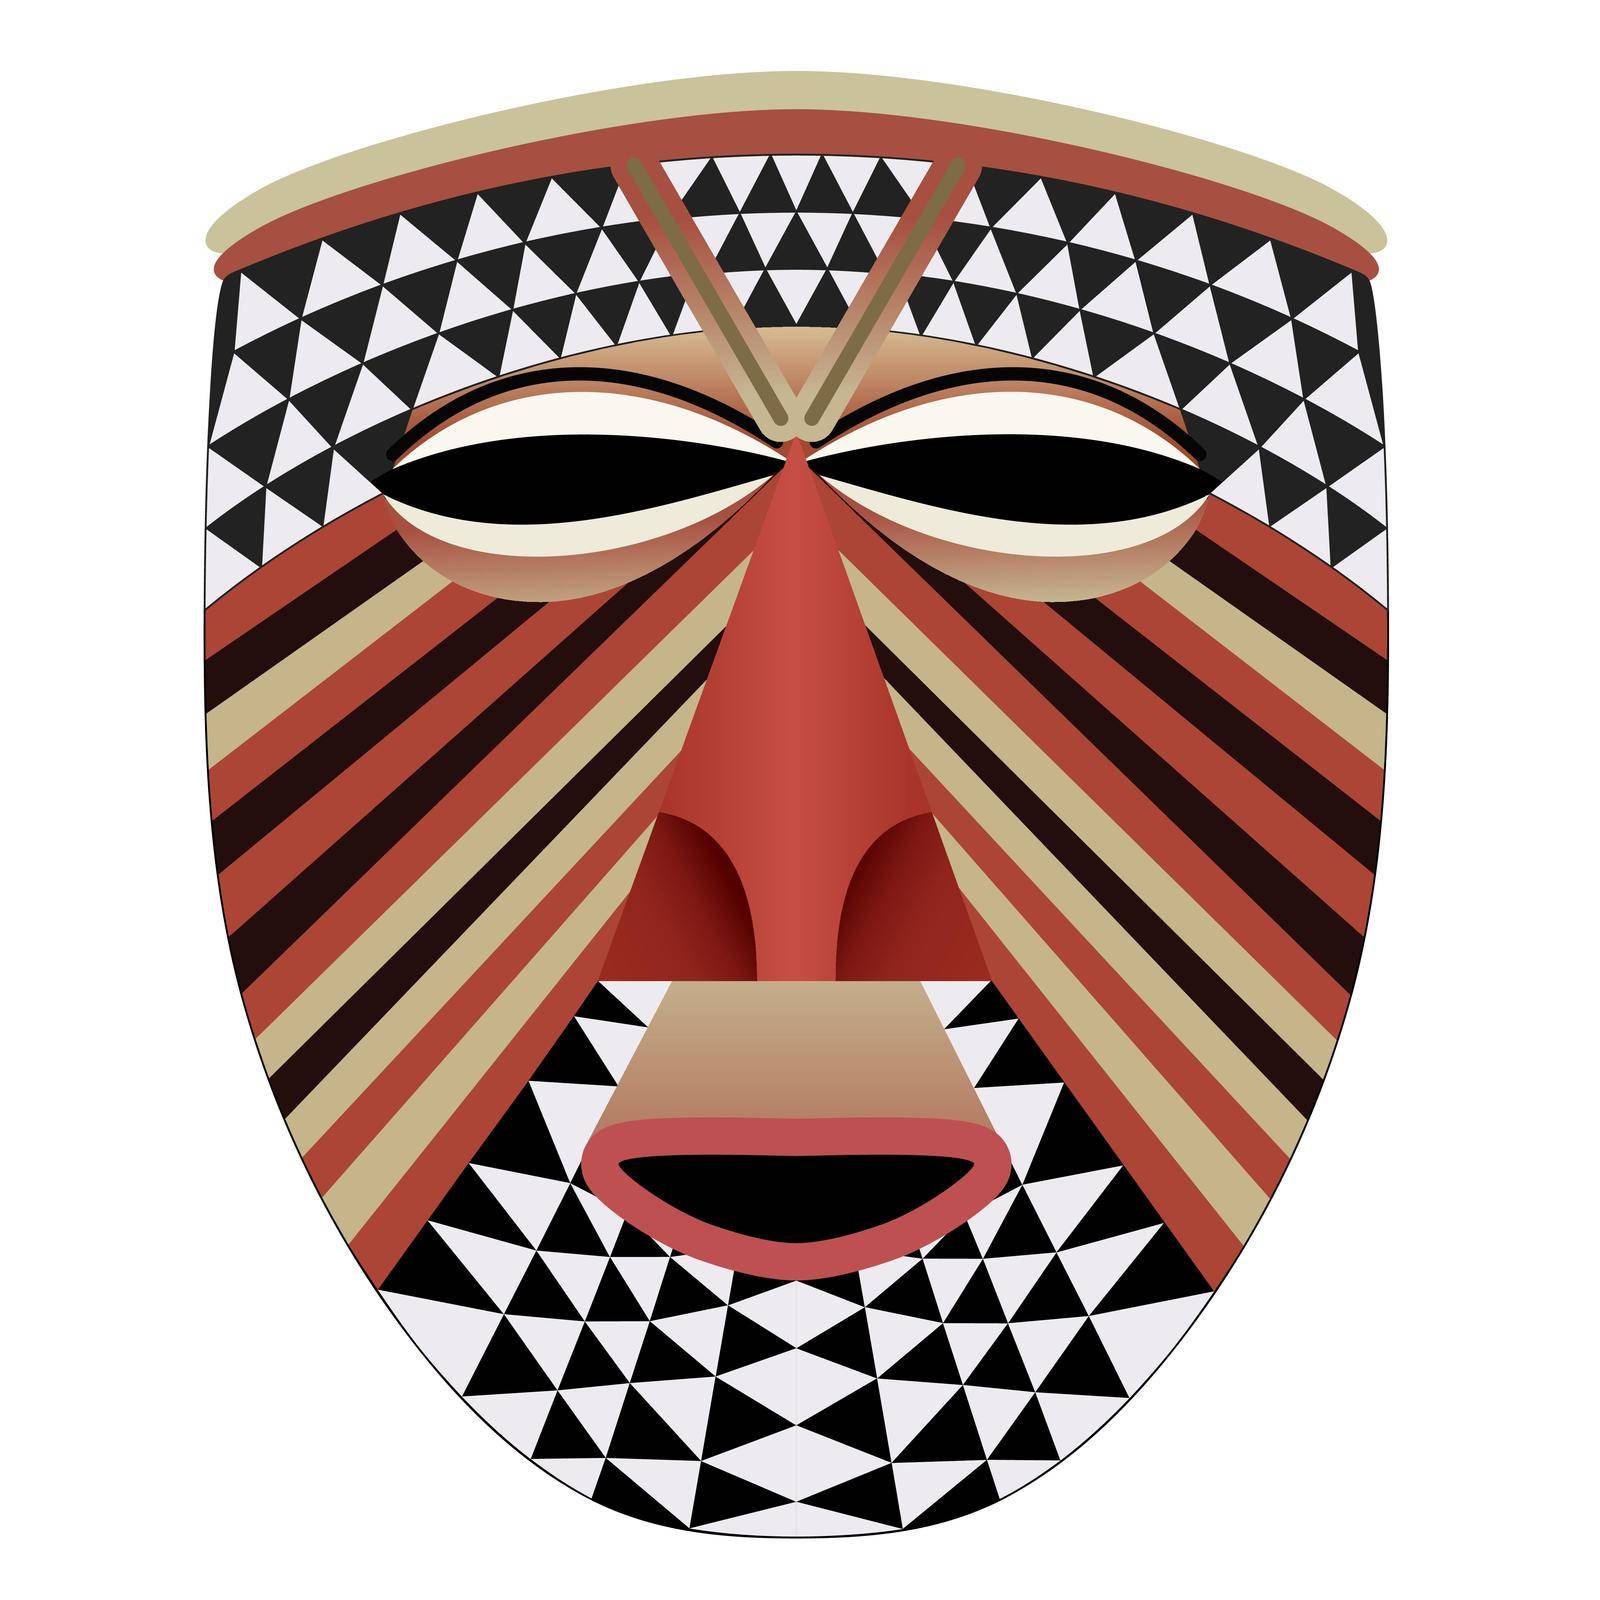 Ornate African face mask - tribal art